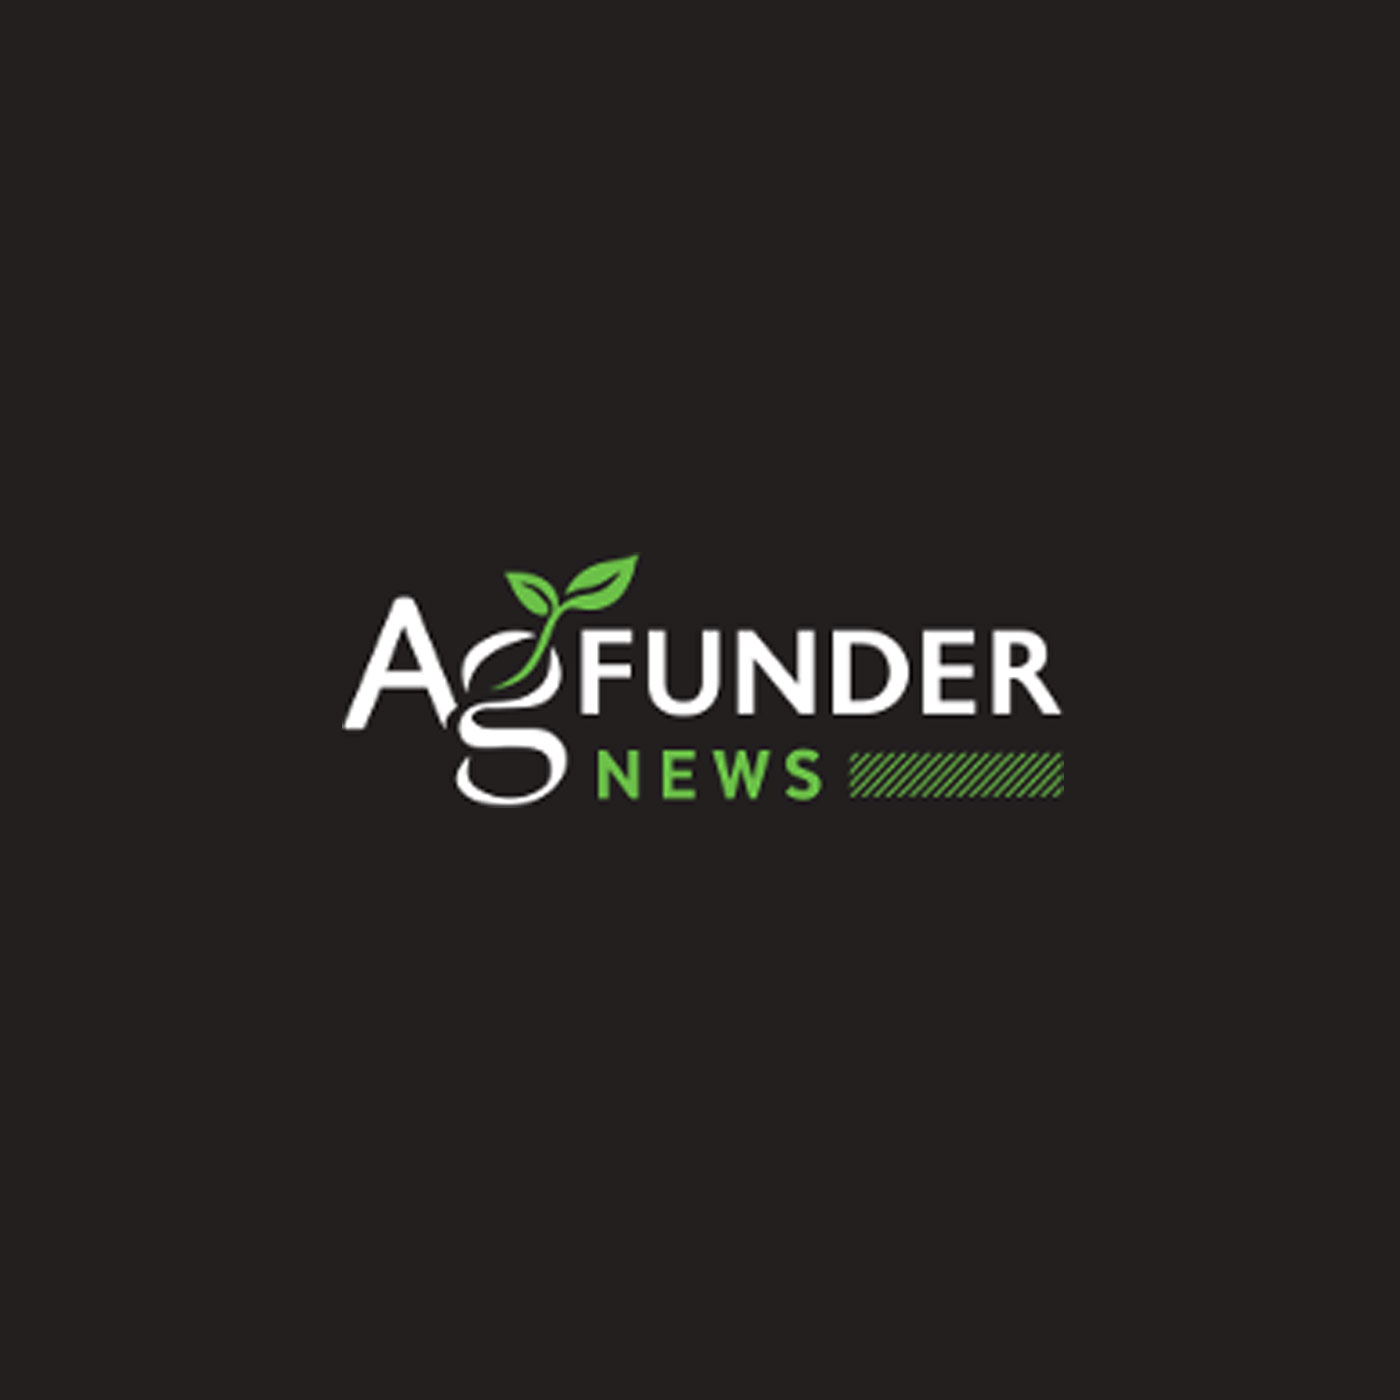 AG Funder News